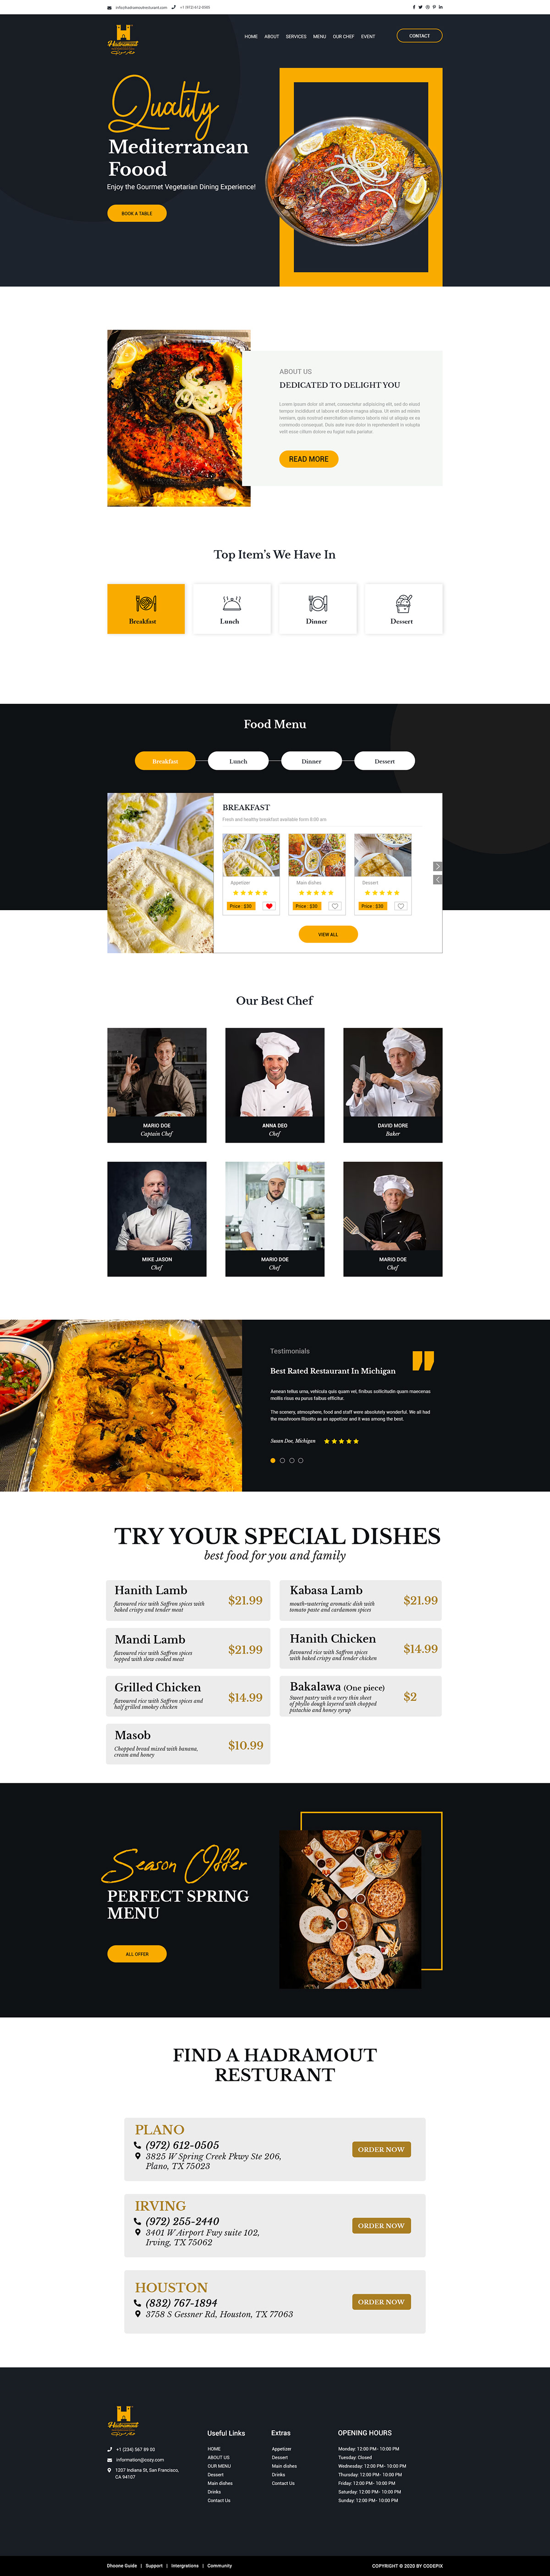 Restaurant Website Landing Page UI Design, efaysal